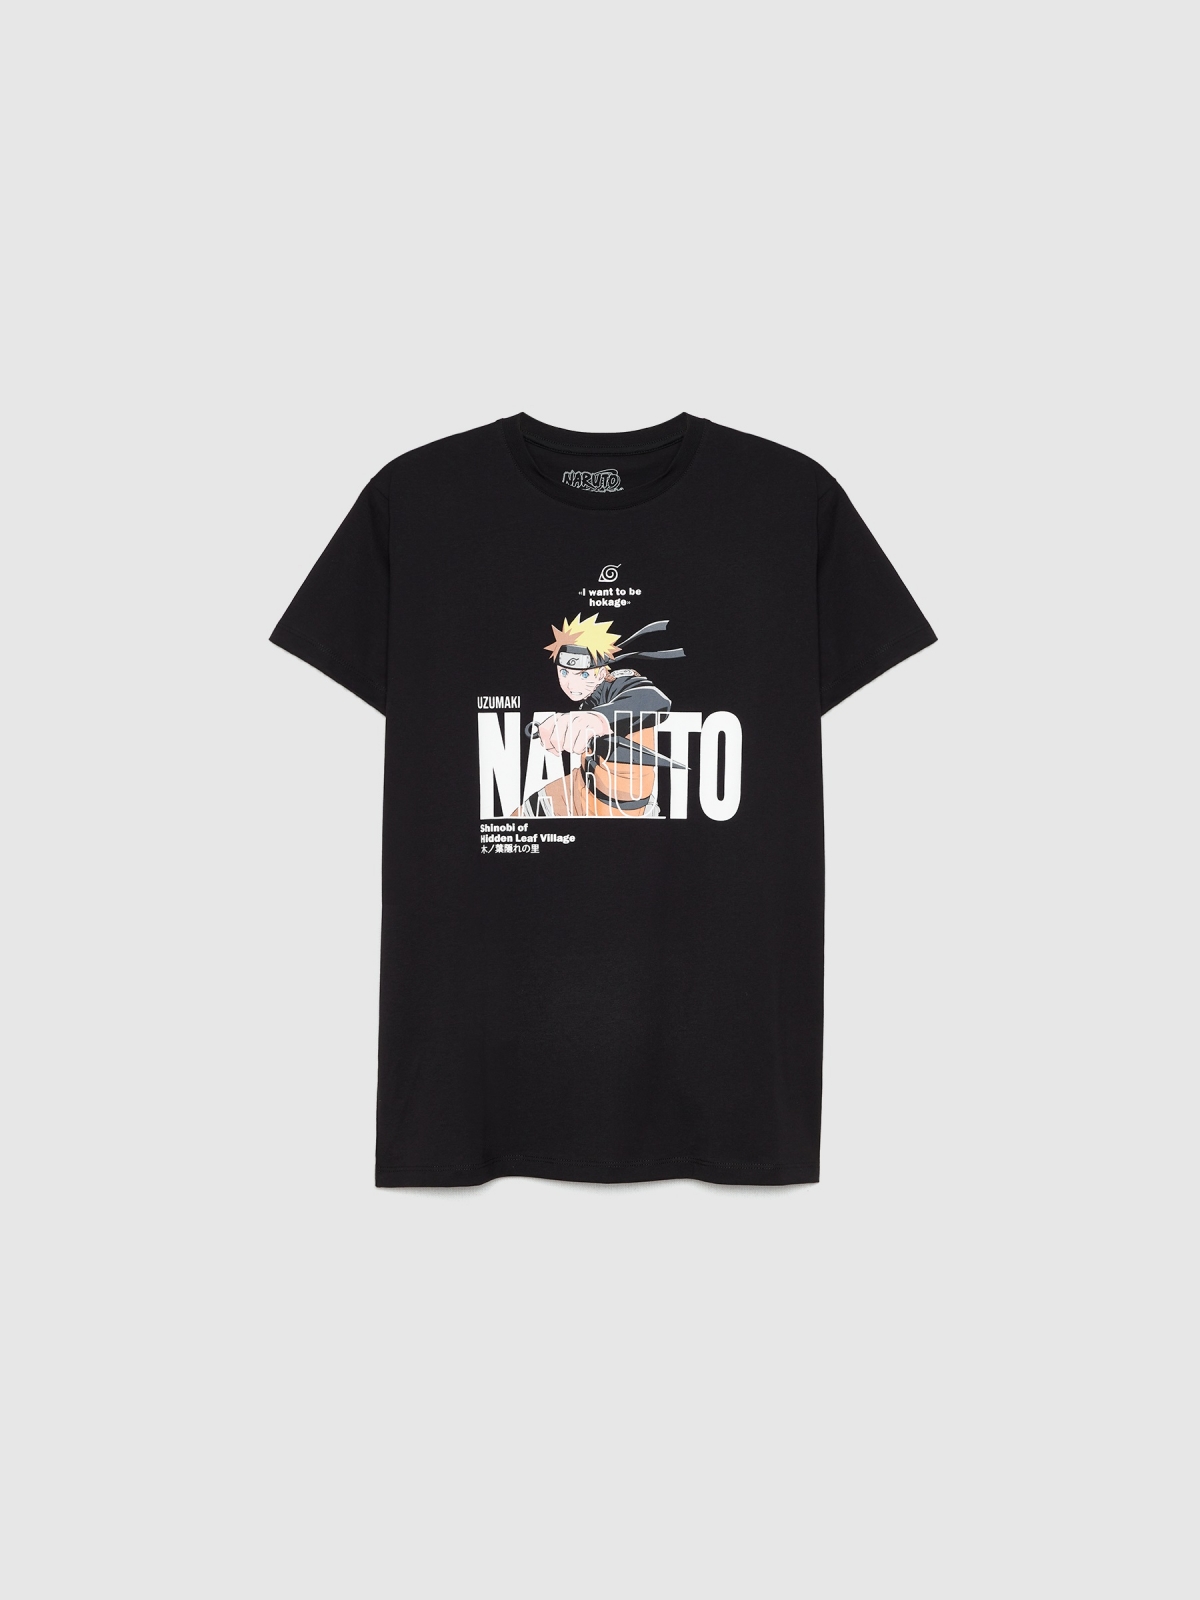  Camiseta Naruto texto negro